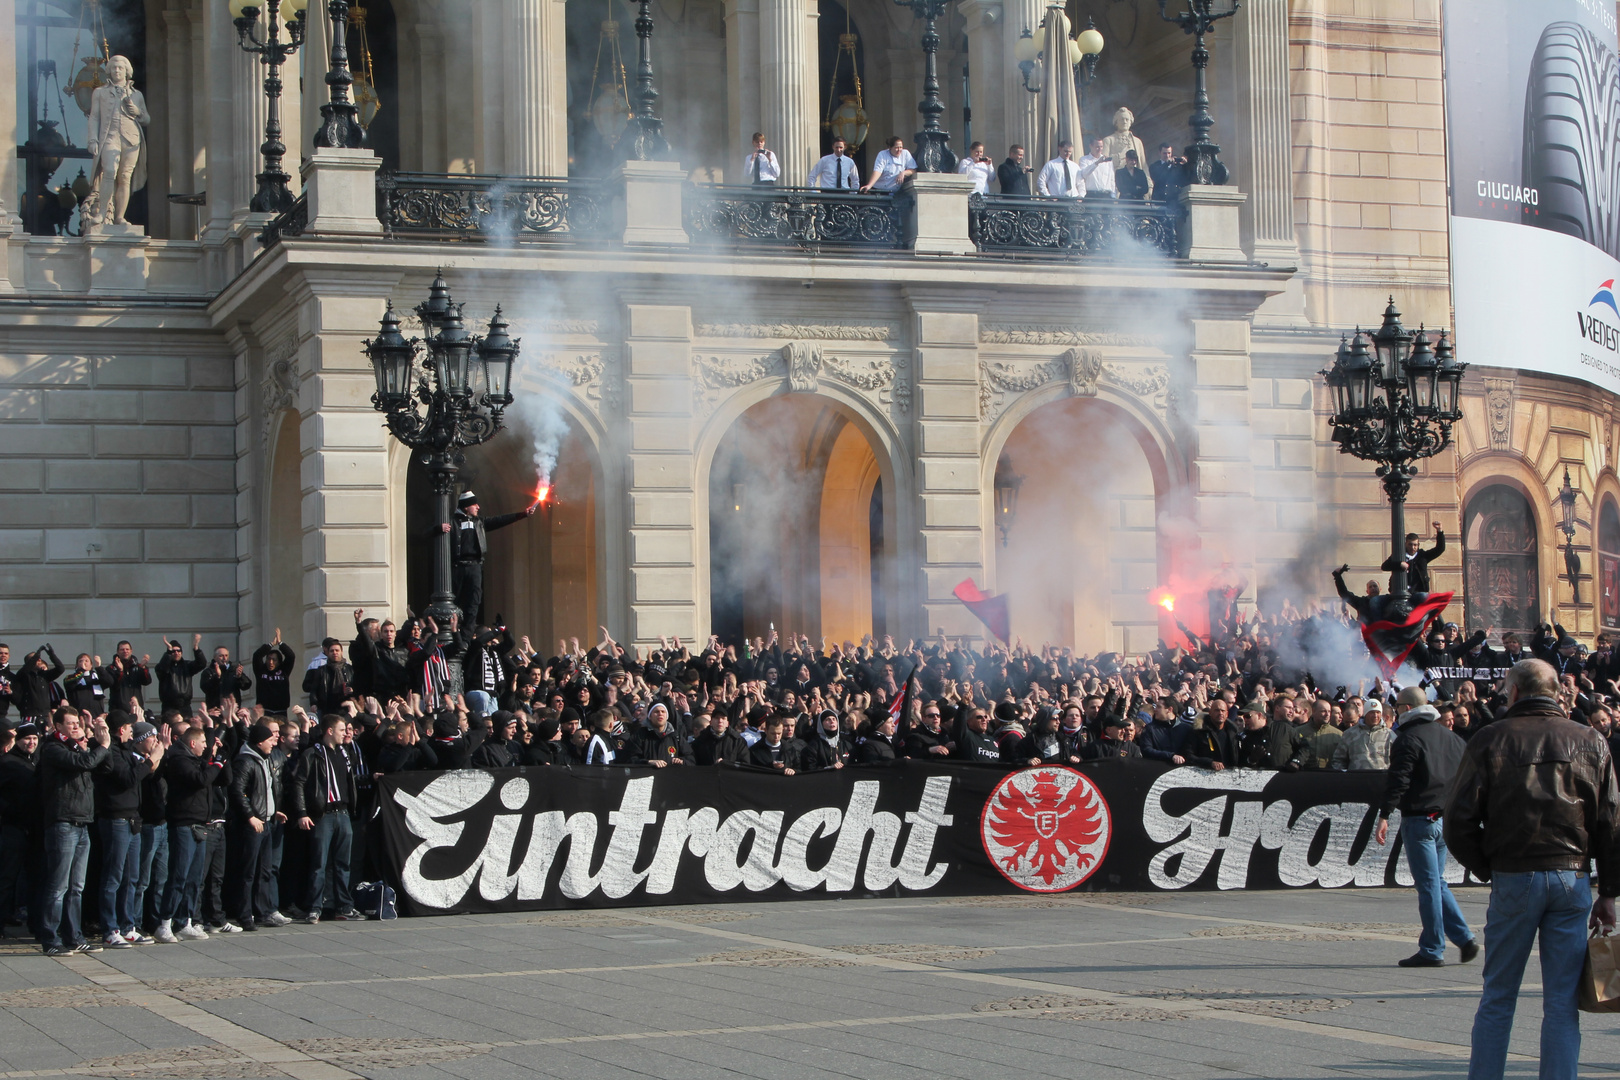 Eintracht Forever